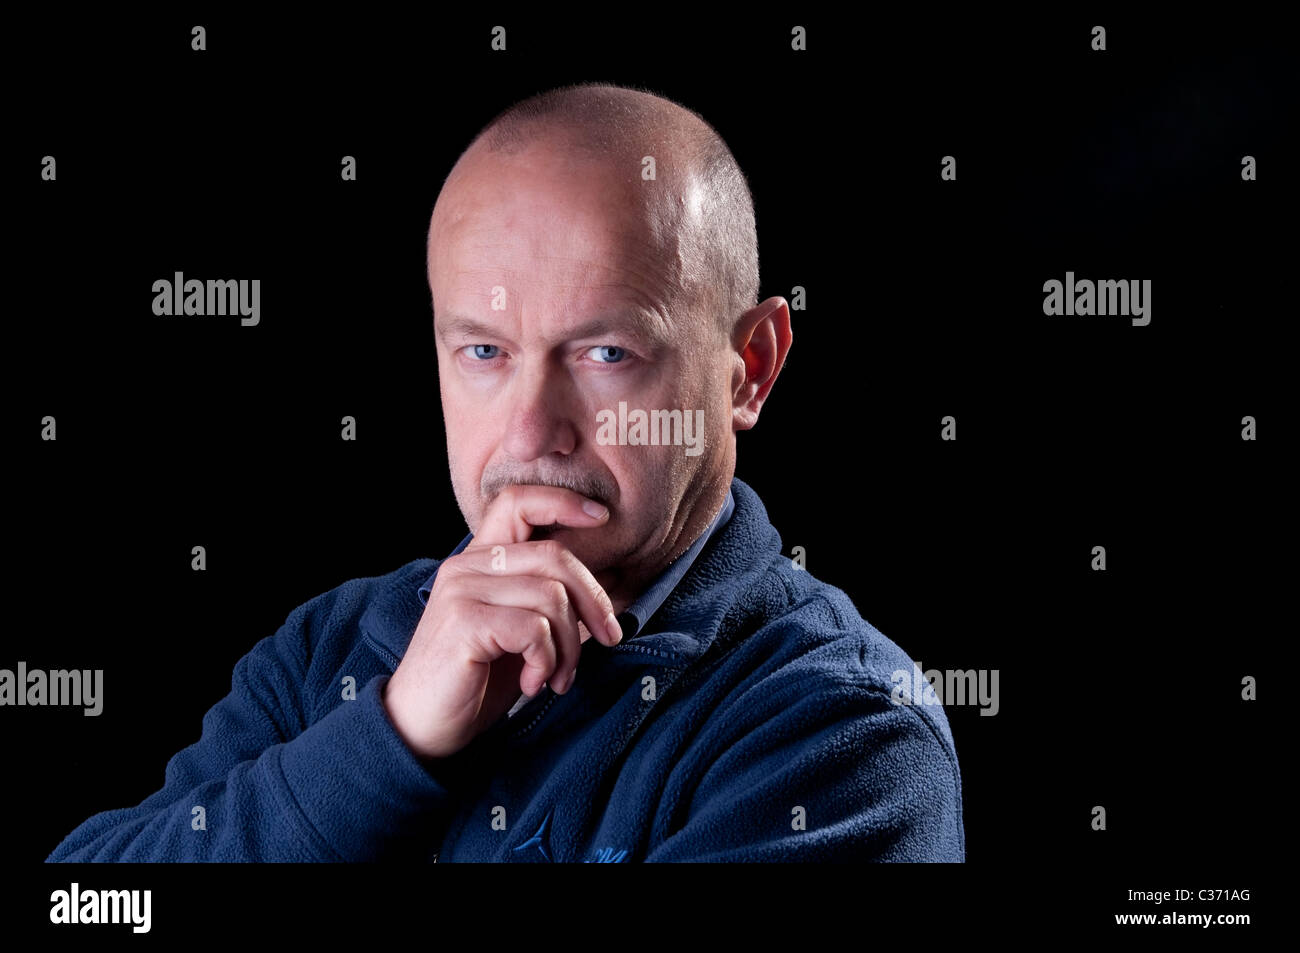 A middle age man portrait Stock Photo